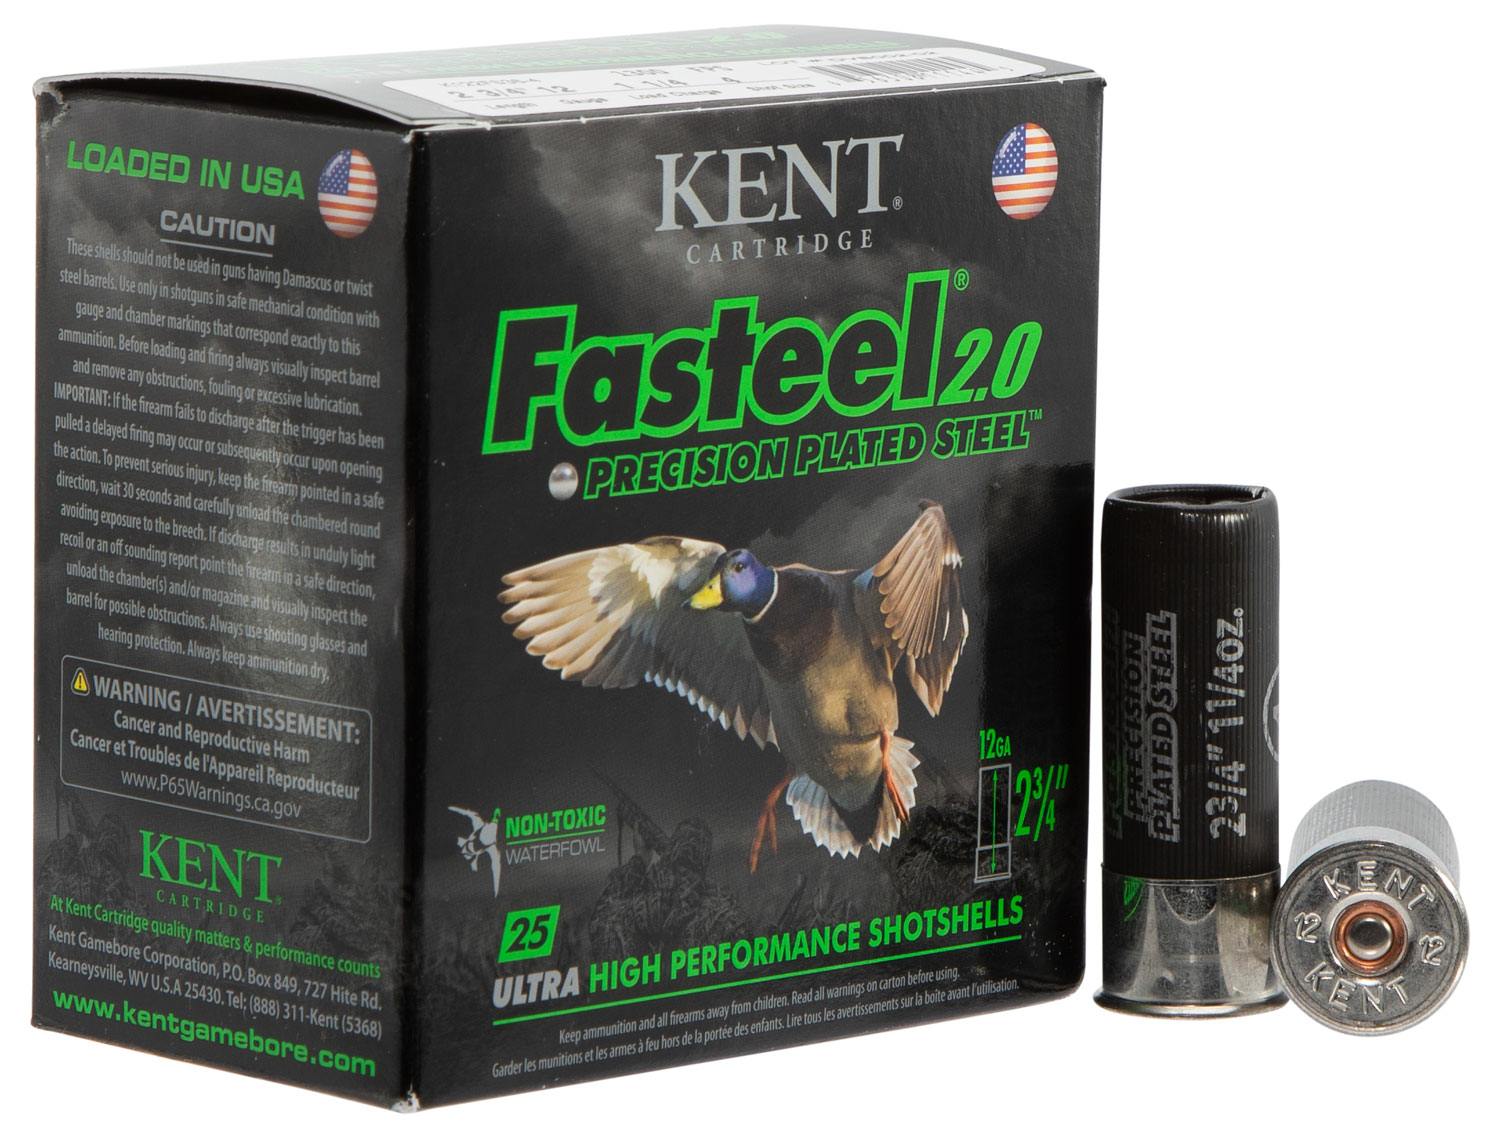 Kent Cartridge K122FS364 Fasteel 2.0 12 Gauge 2.75